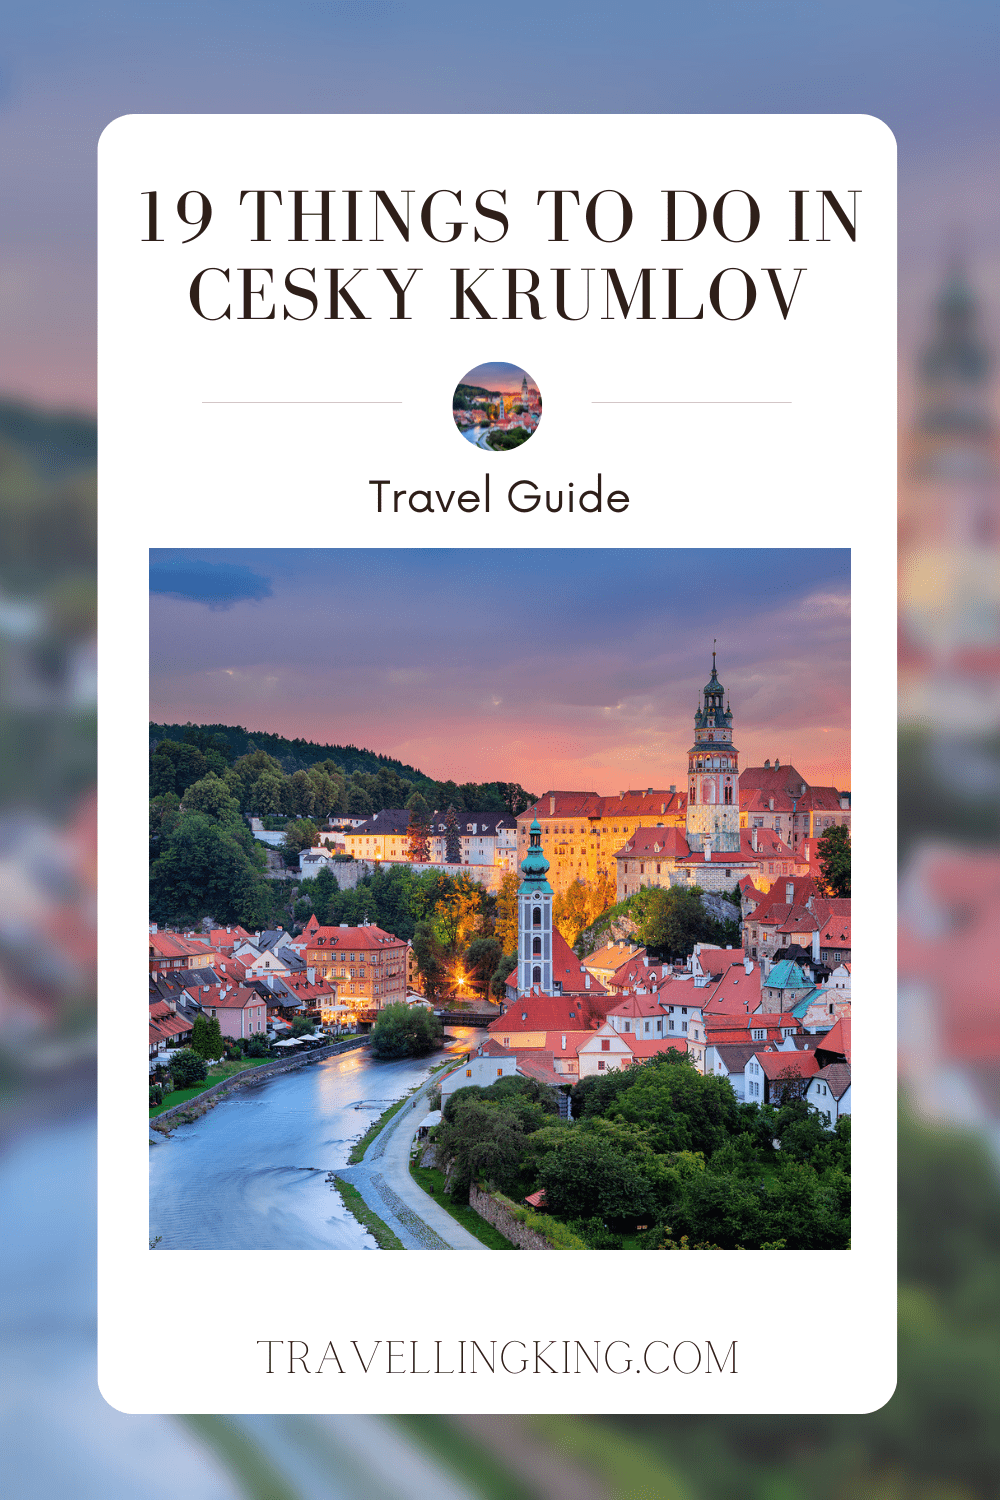 19 Things To Do in Cesky Krumlov